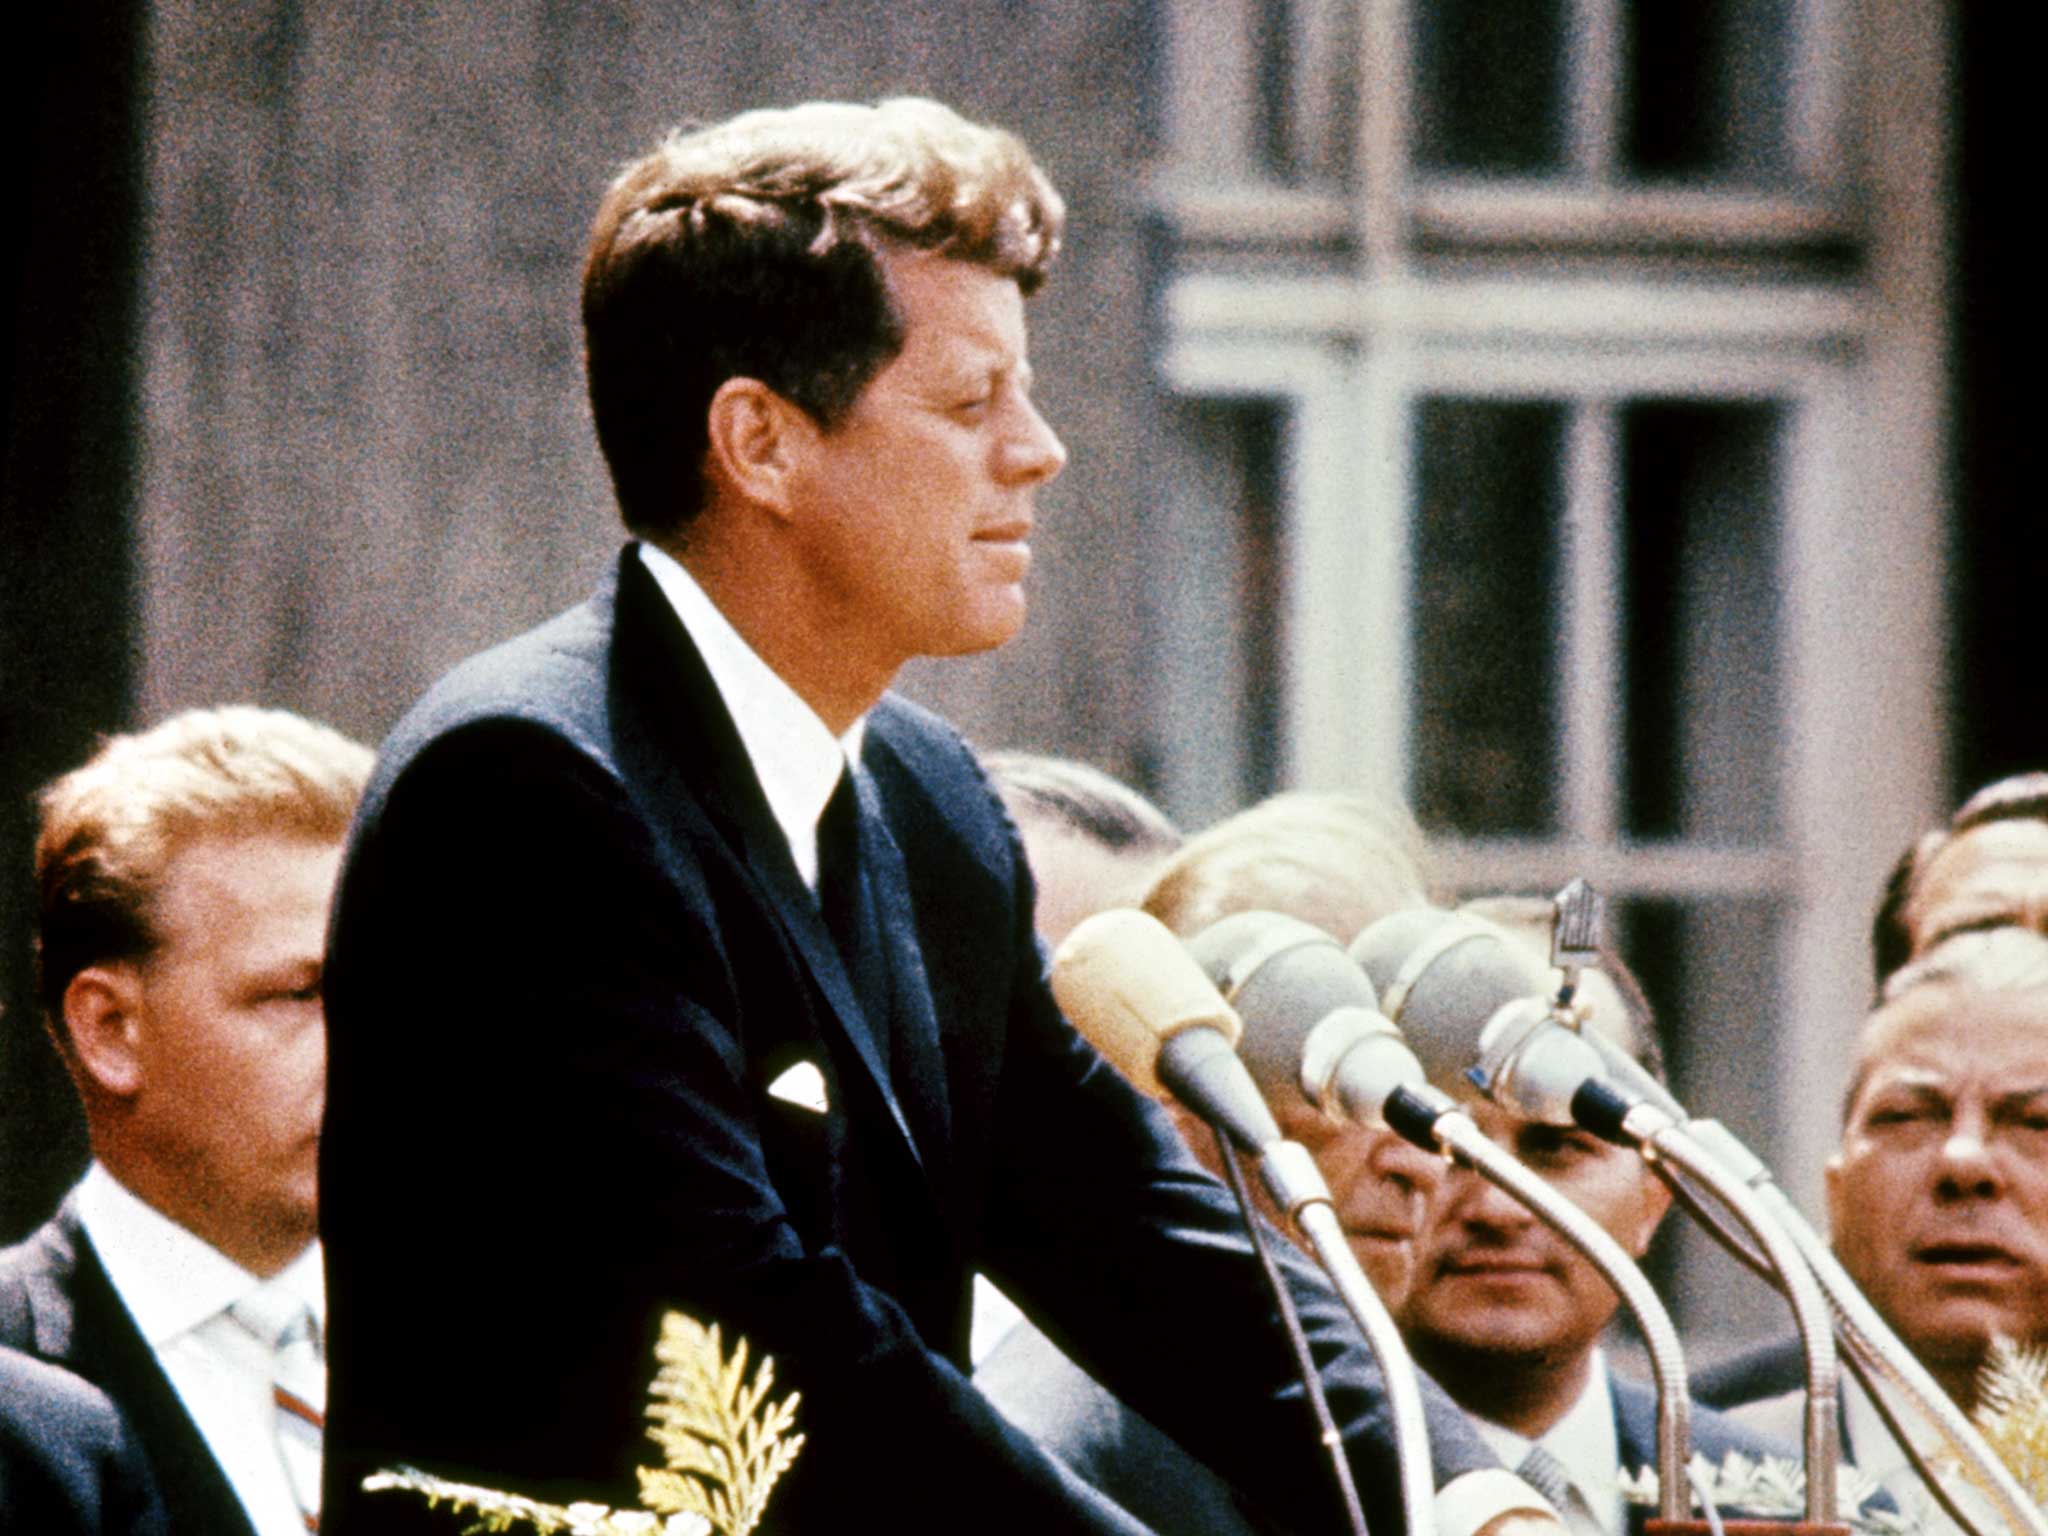 President John F. Kennedy giving a speech